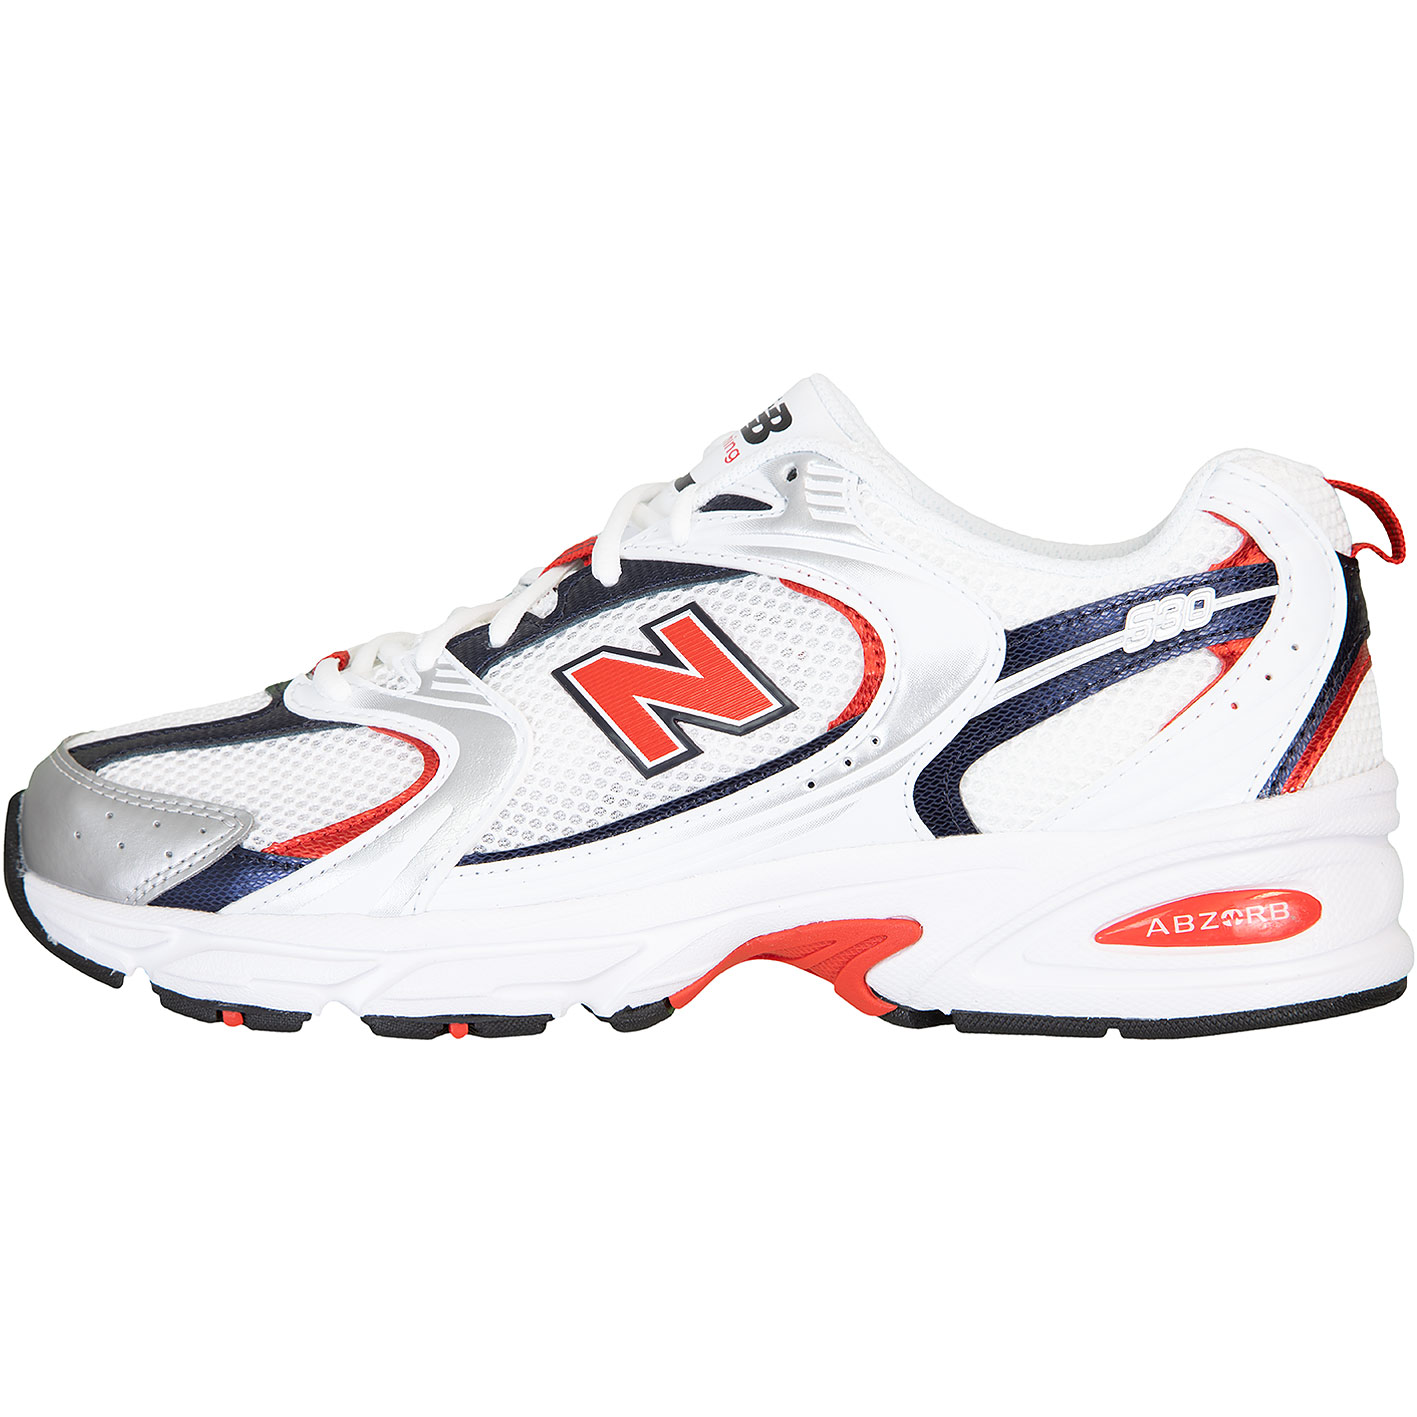 ☆ New Balance 530 Sneaker Schuhe weiß - hier bestellen!